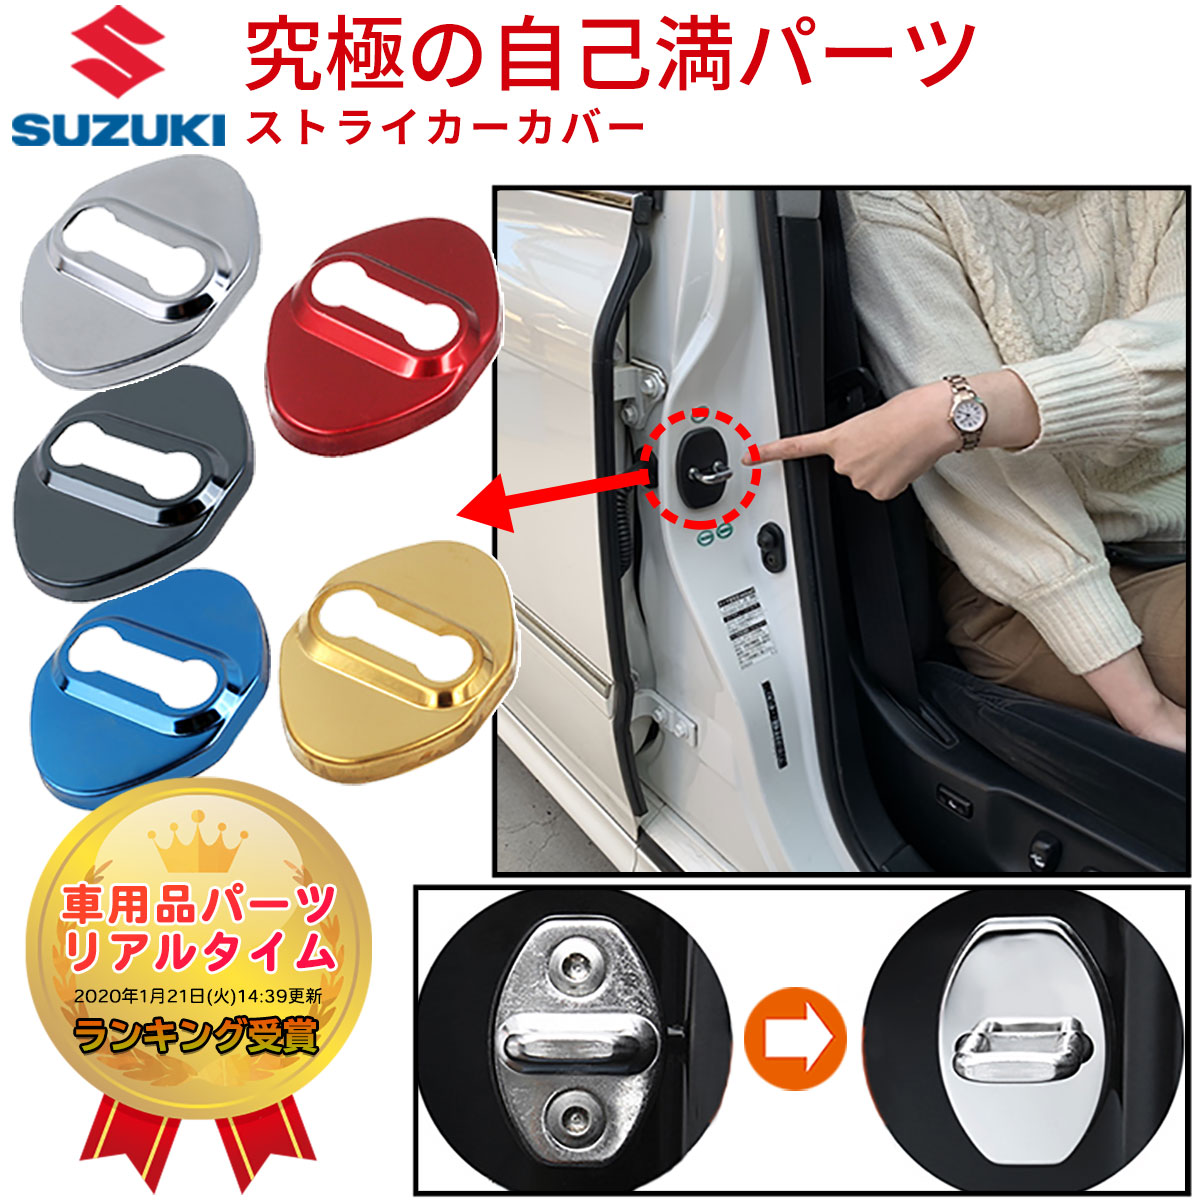 スズキ SUZUKI ロゴなし ドア ストライカー カバー ステンレス鋼製 Type:A Negesu(ネグエス) 